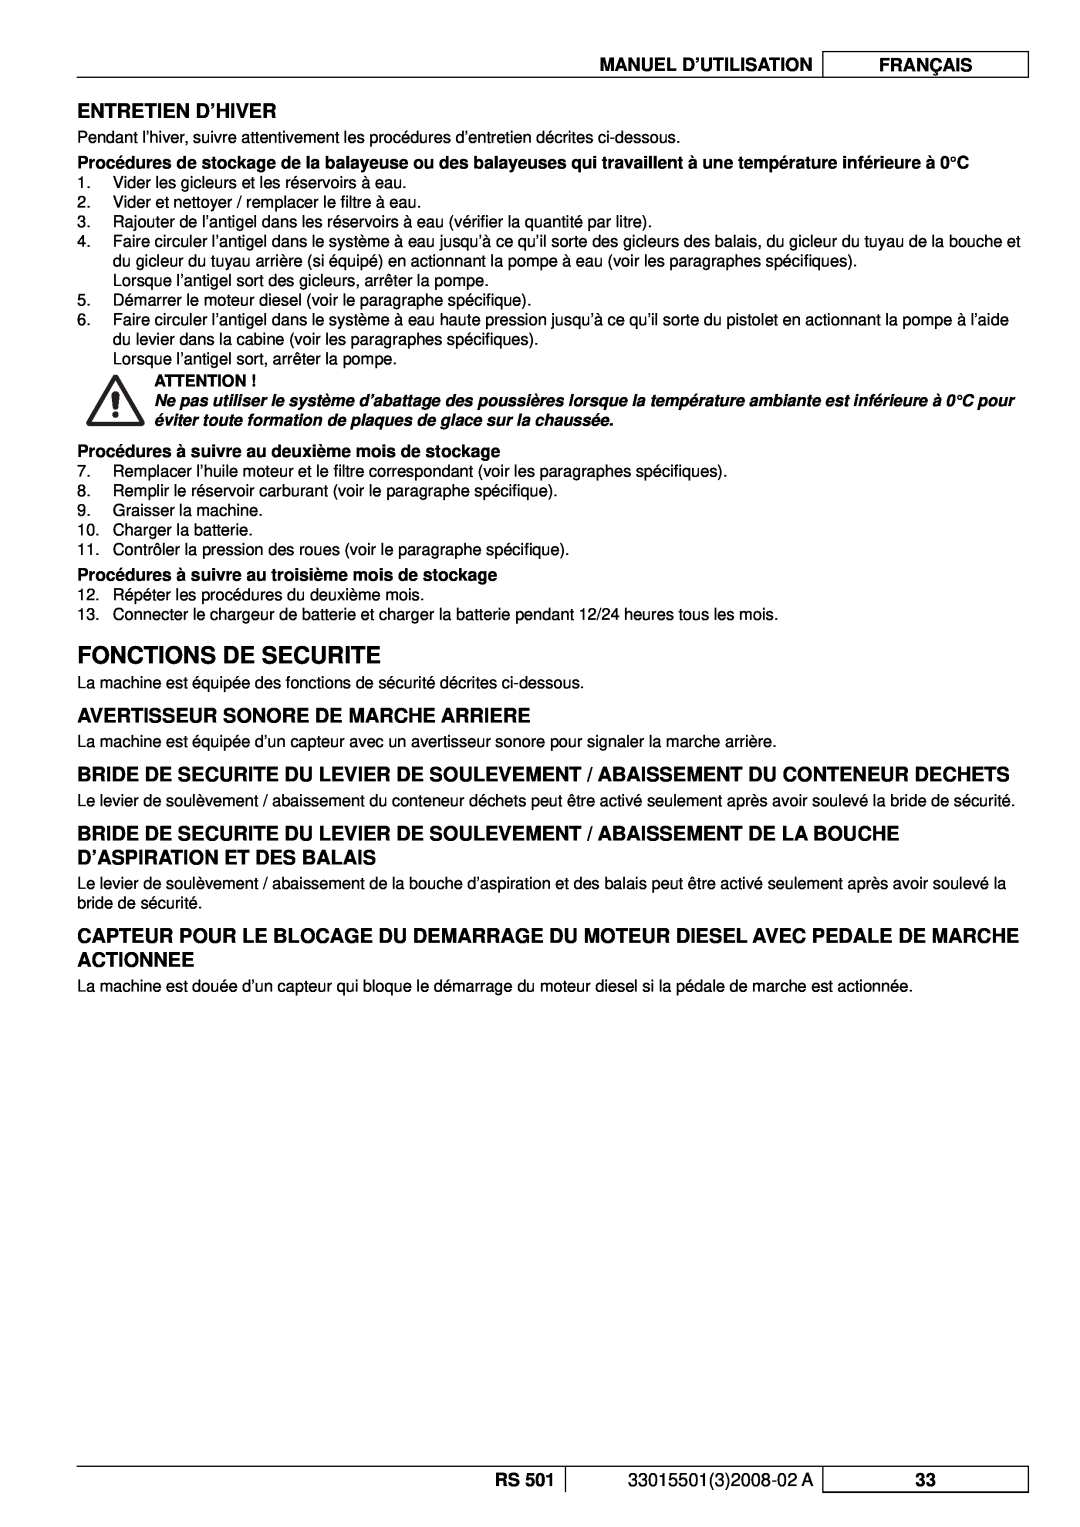 Nilfisk-ALTO RS 501 manuel dutilisation Fonctions De Securite, Entretien D’Hiver, Avertisseur Sonore De Marche Arriere 